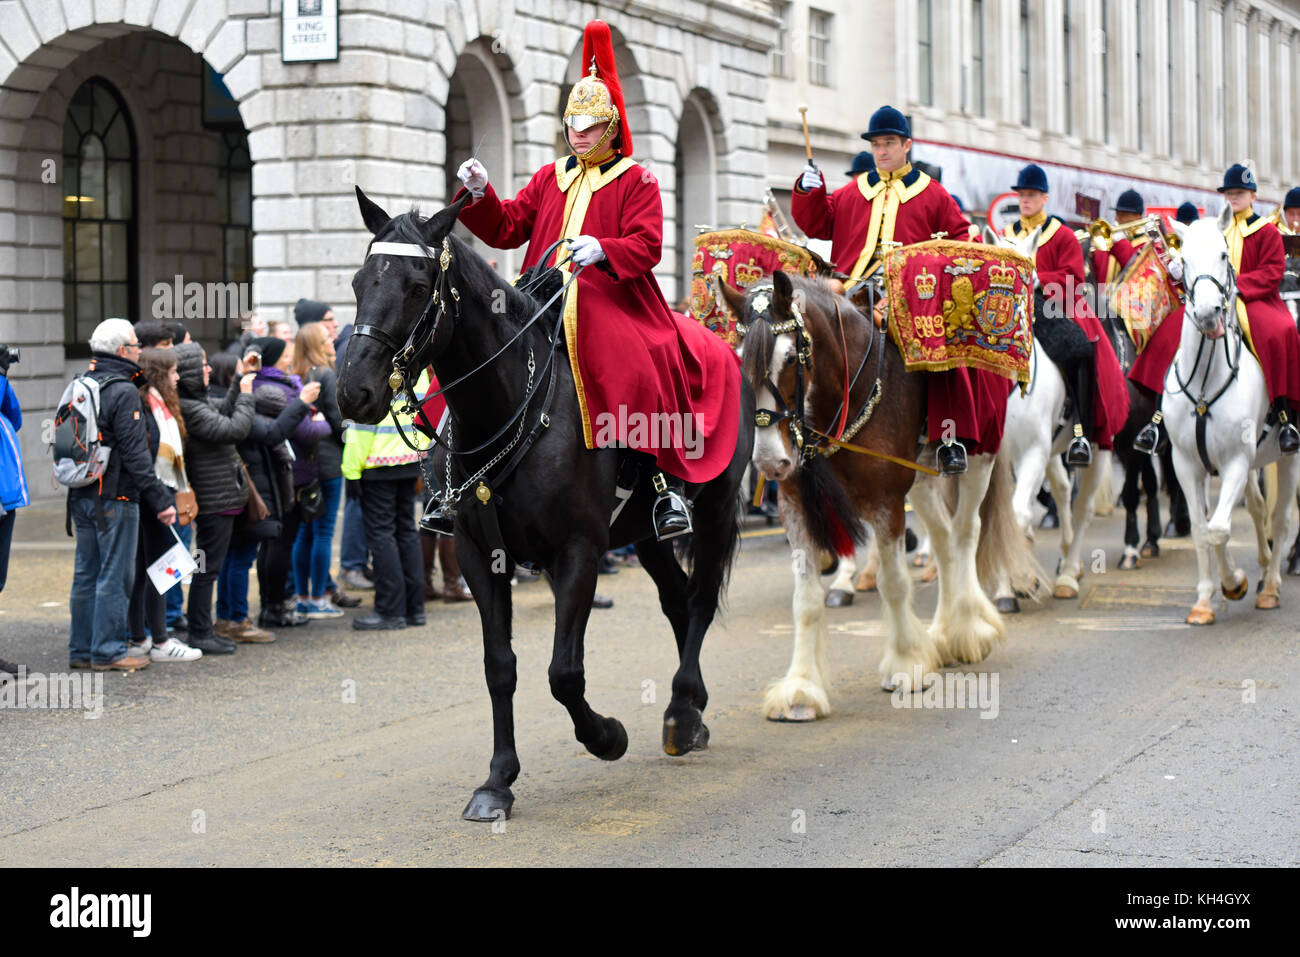 Musique de la Household Cavalry régiment monté sur le Lord Mayor's Show procession le long de Cheapside, Londres. La foule dans la ville Banque D'Images